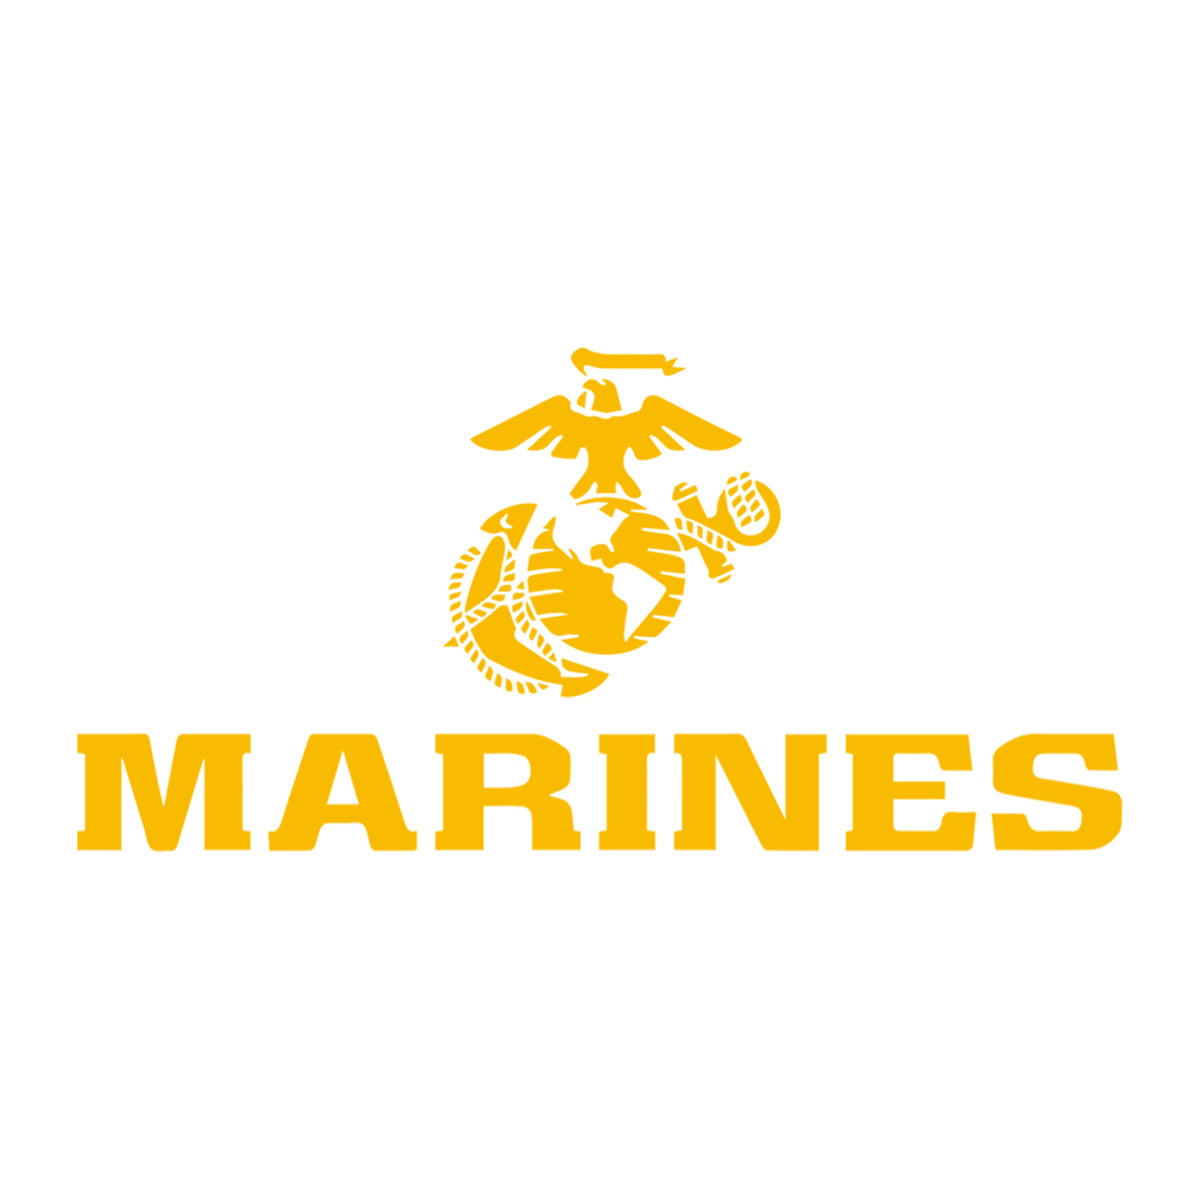 Gold EGA Marines Hoodie